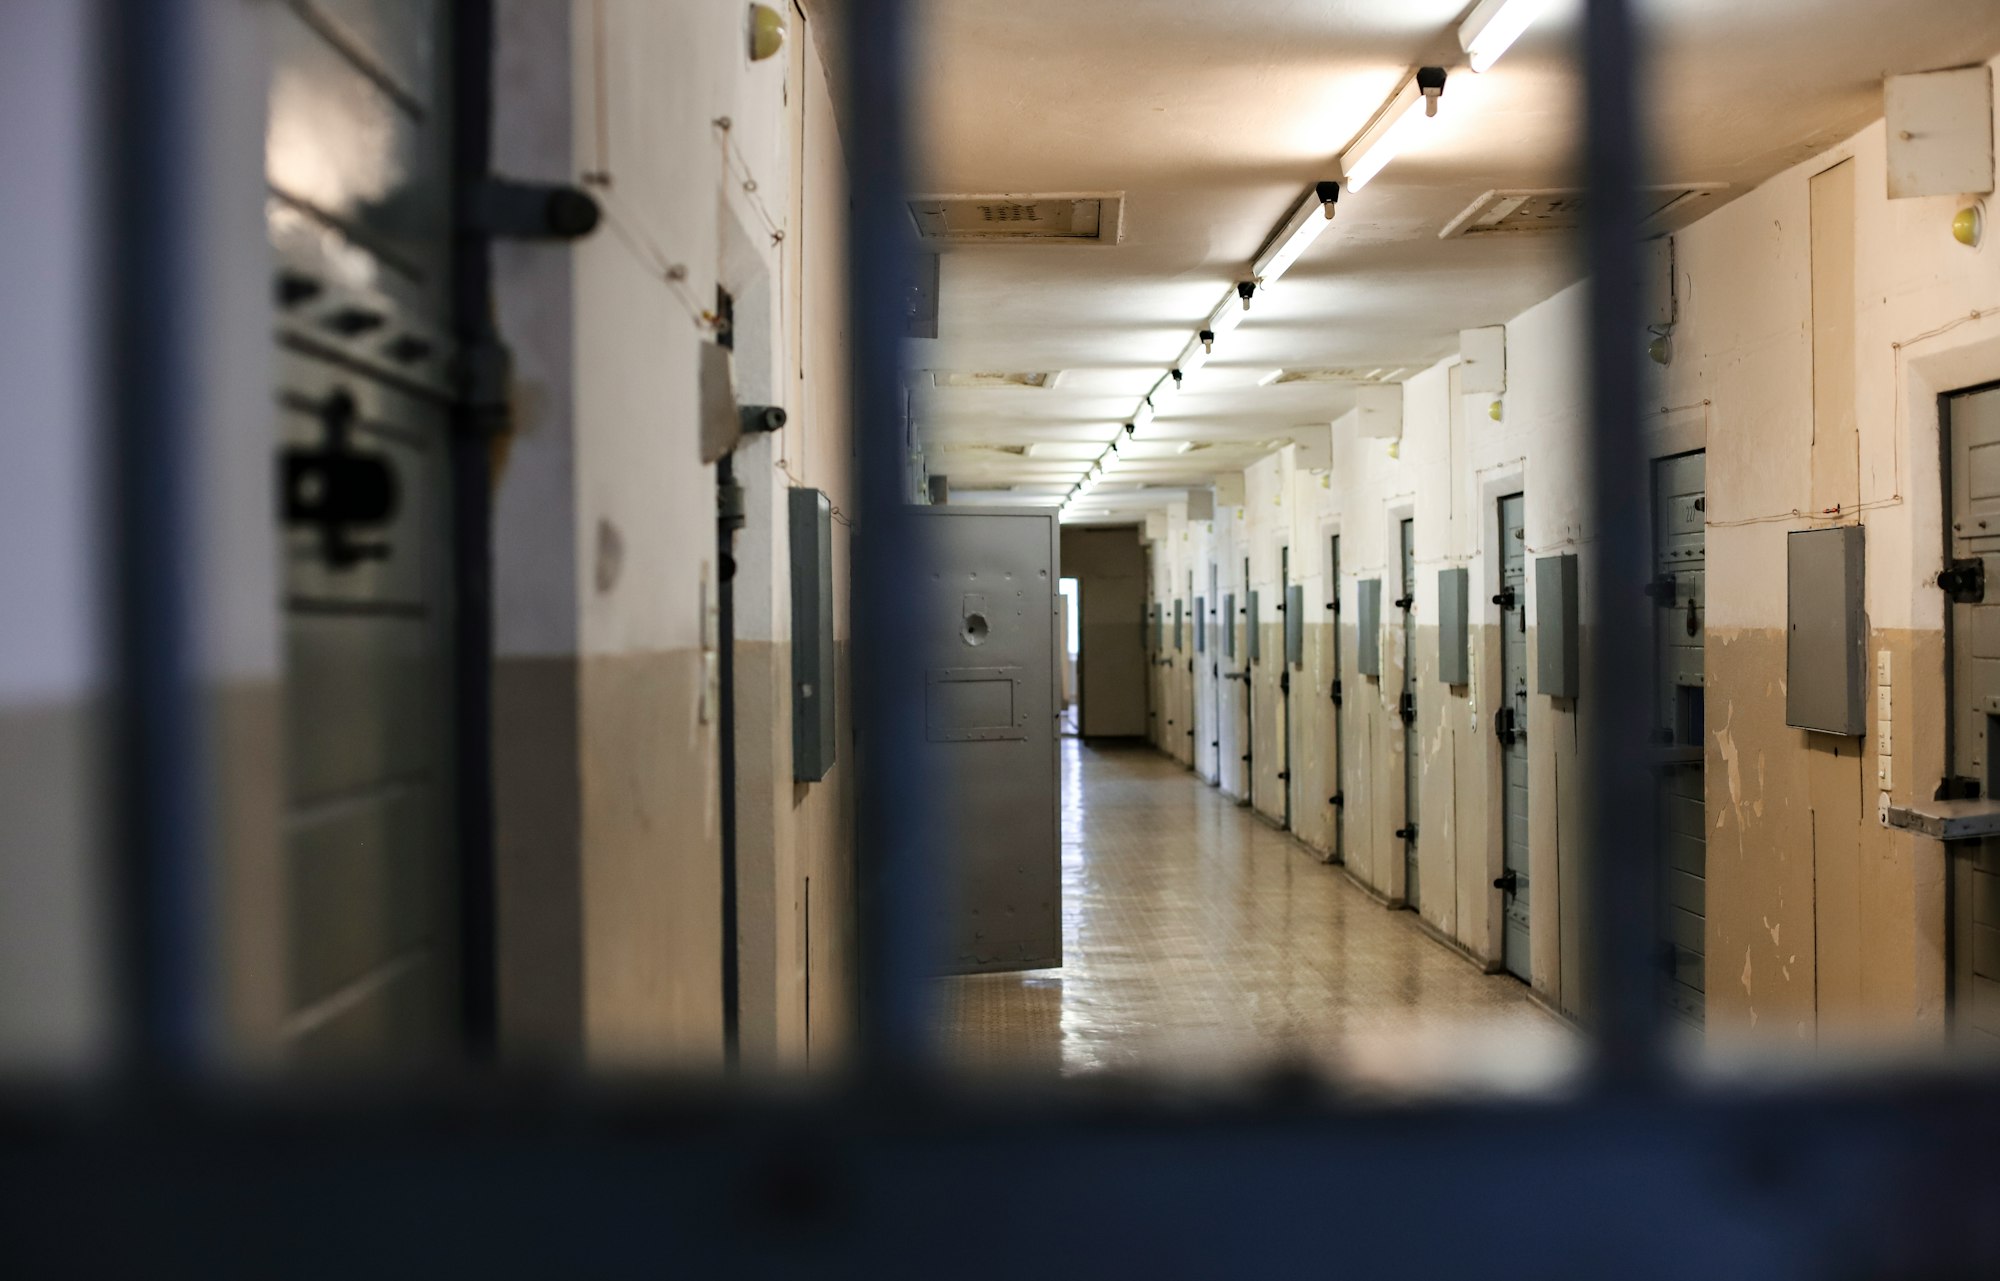 Male sex offenders in Limerick women's prison